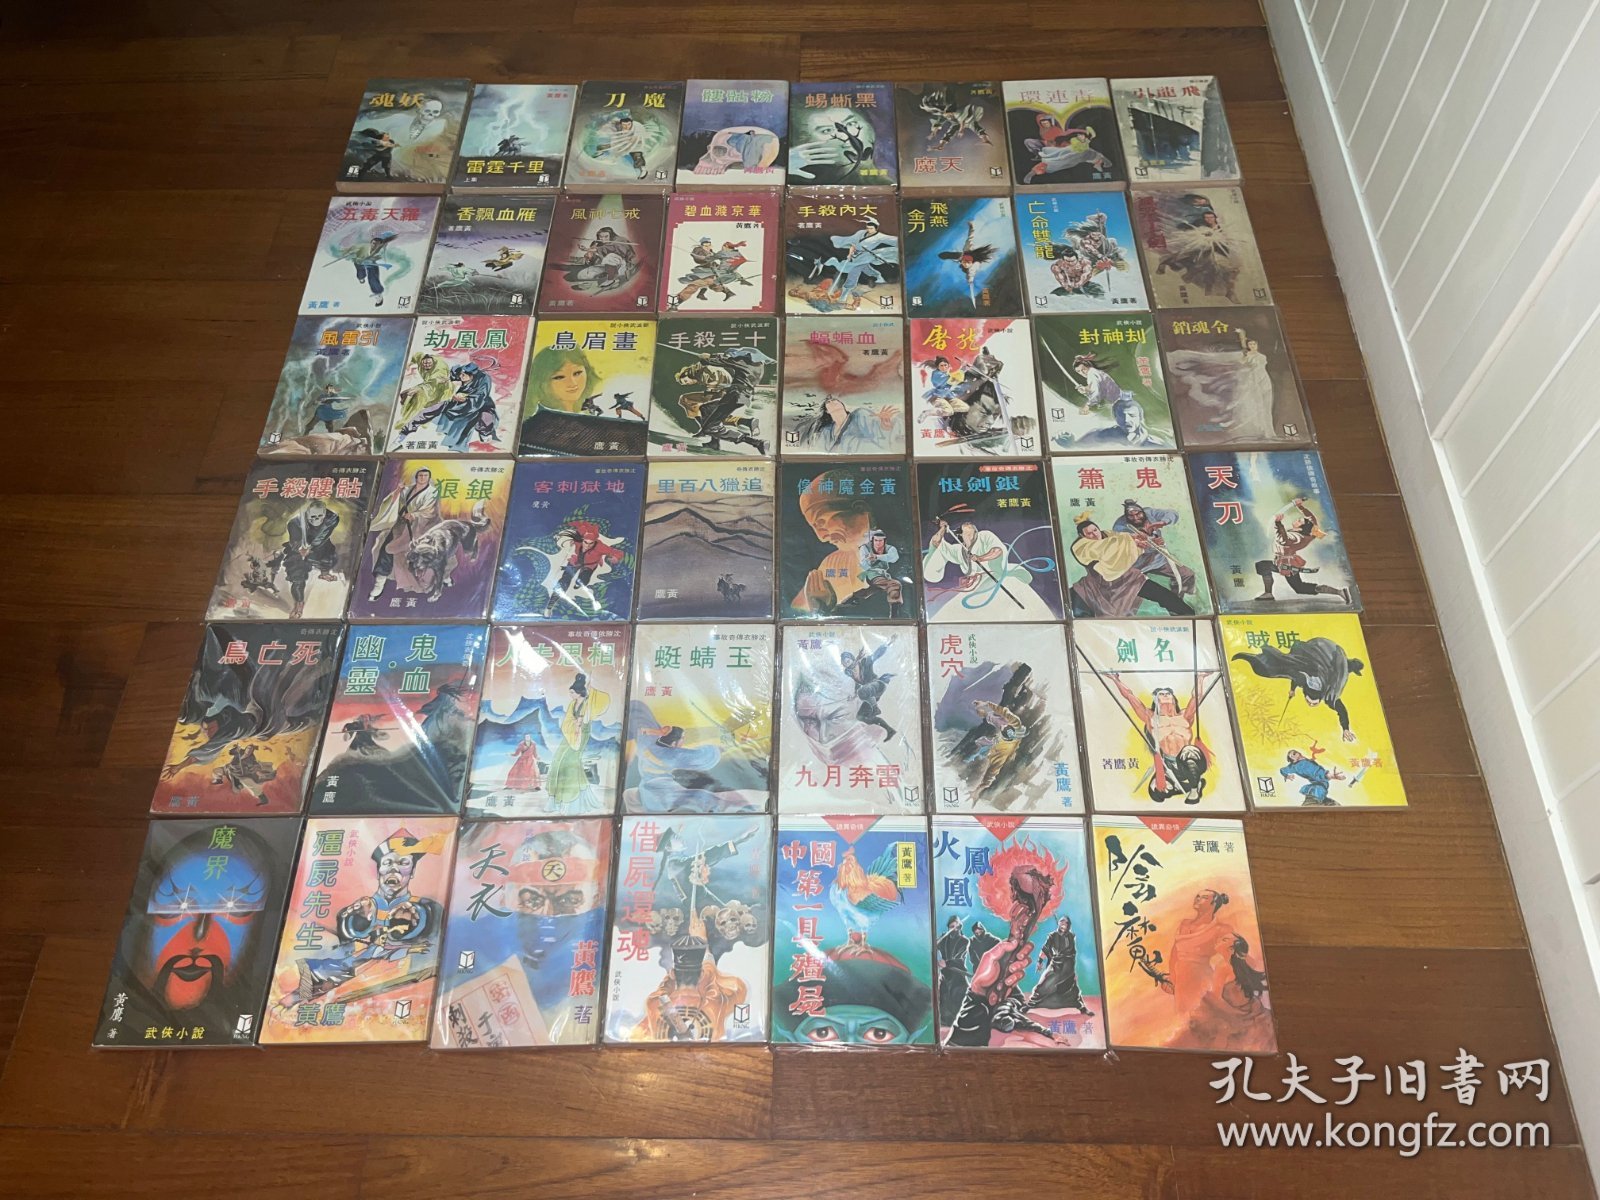 繁体旧版黄鹰武侠小说47部49册合售，近全新库存品，武林出版社。